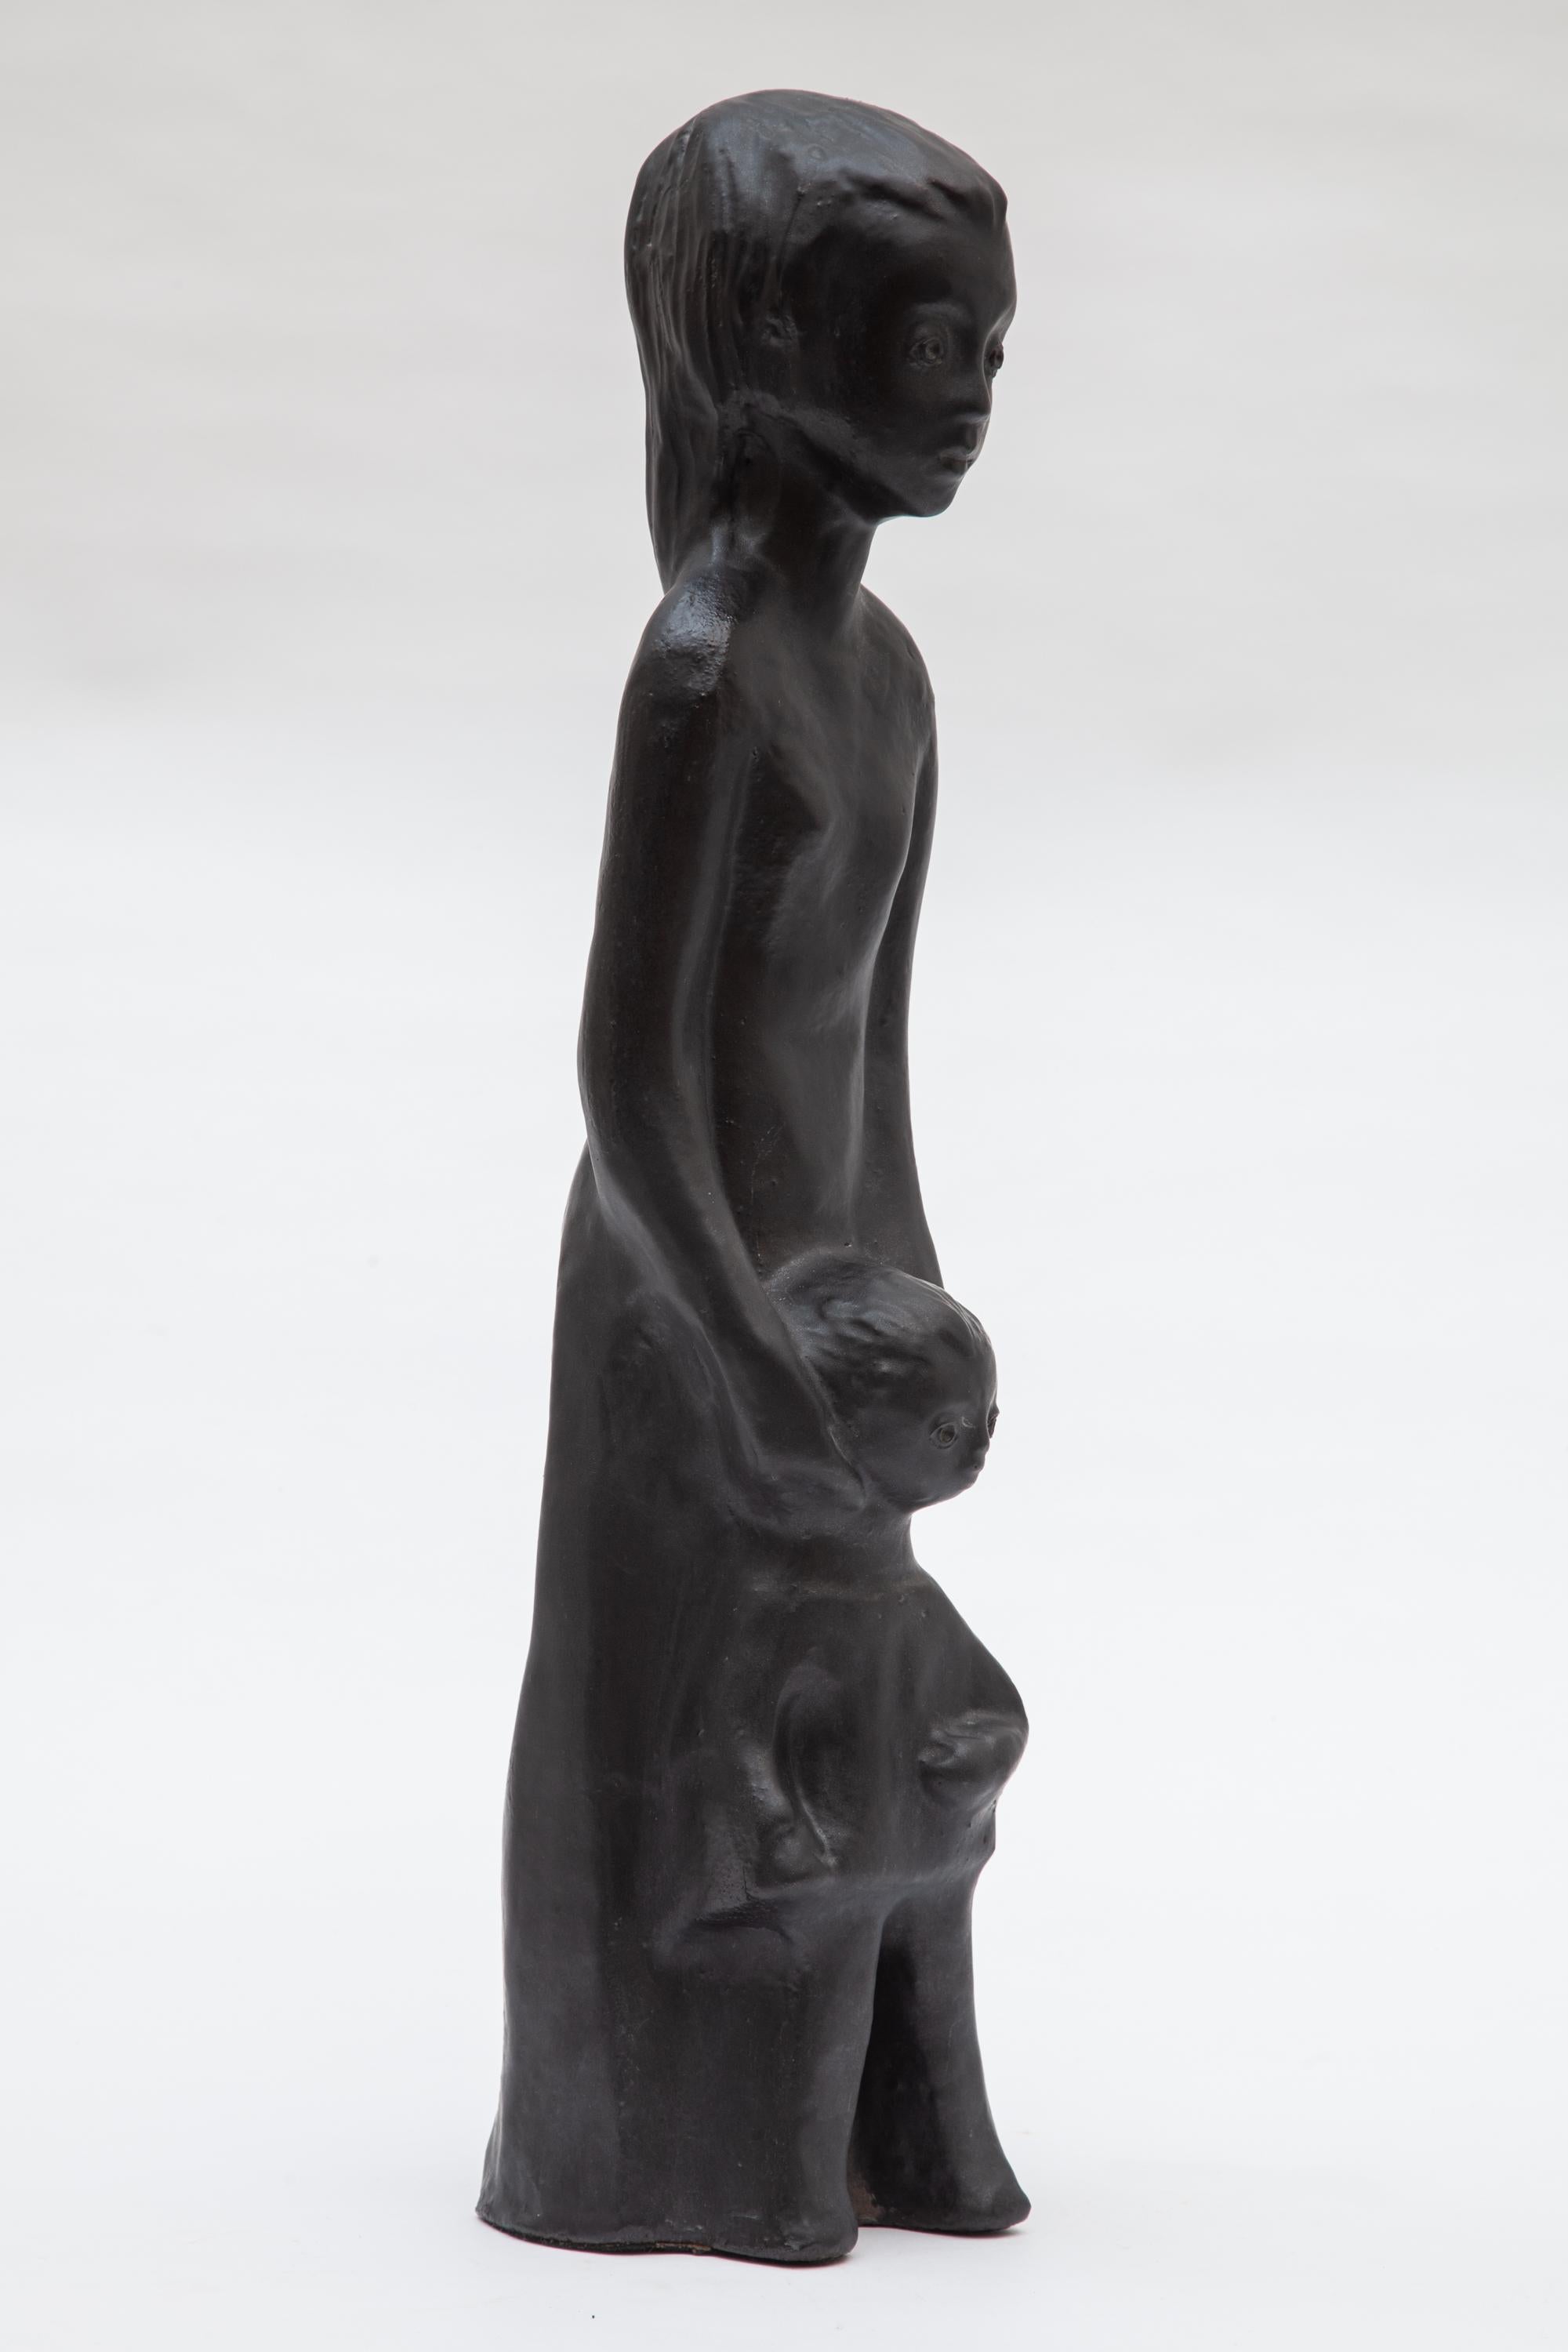 Sculpture Amphore précoce en céramique représentant une mère et son enfant, créée par Elie Van Damme, vers 1960.
Glace métallique noire. Parfait état. 

Livraison gratuite.